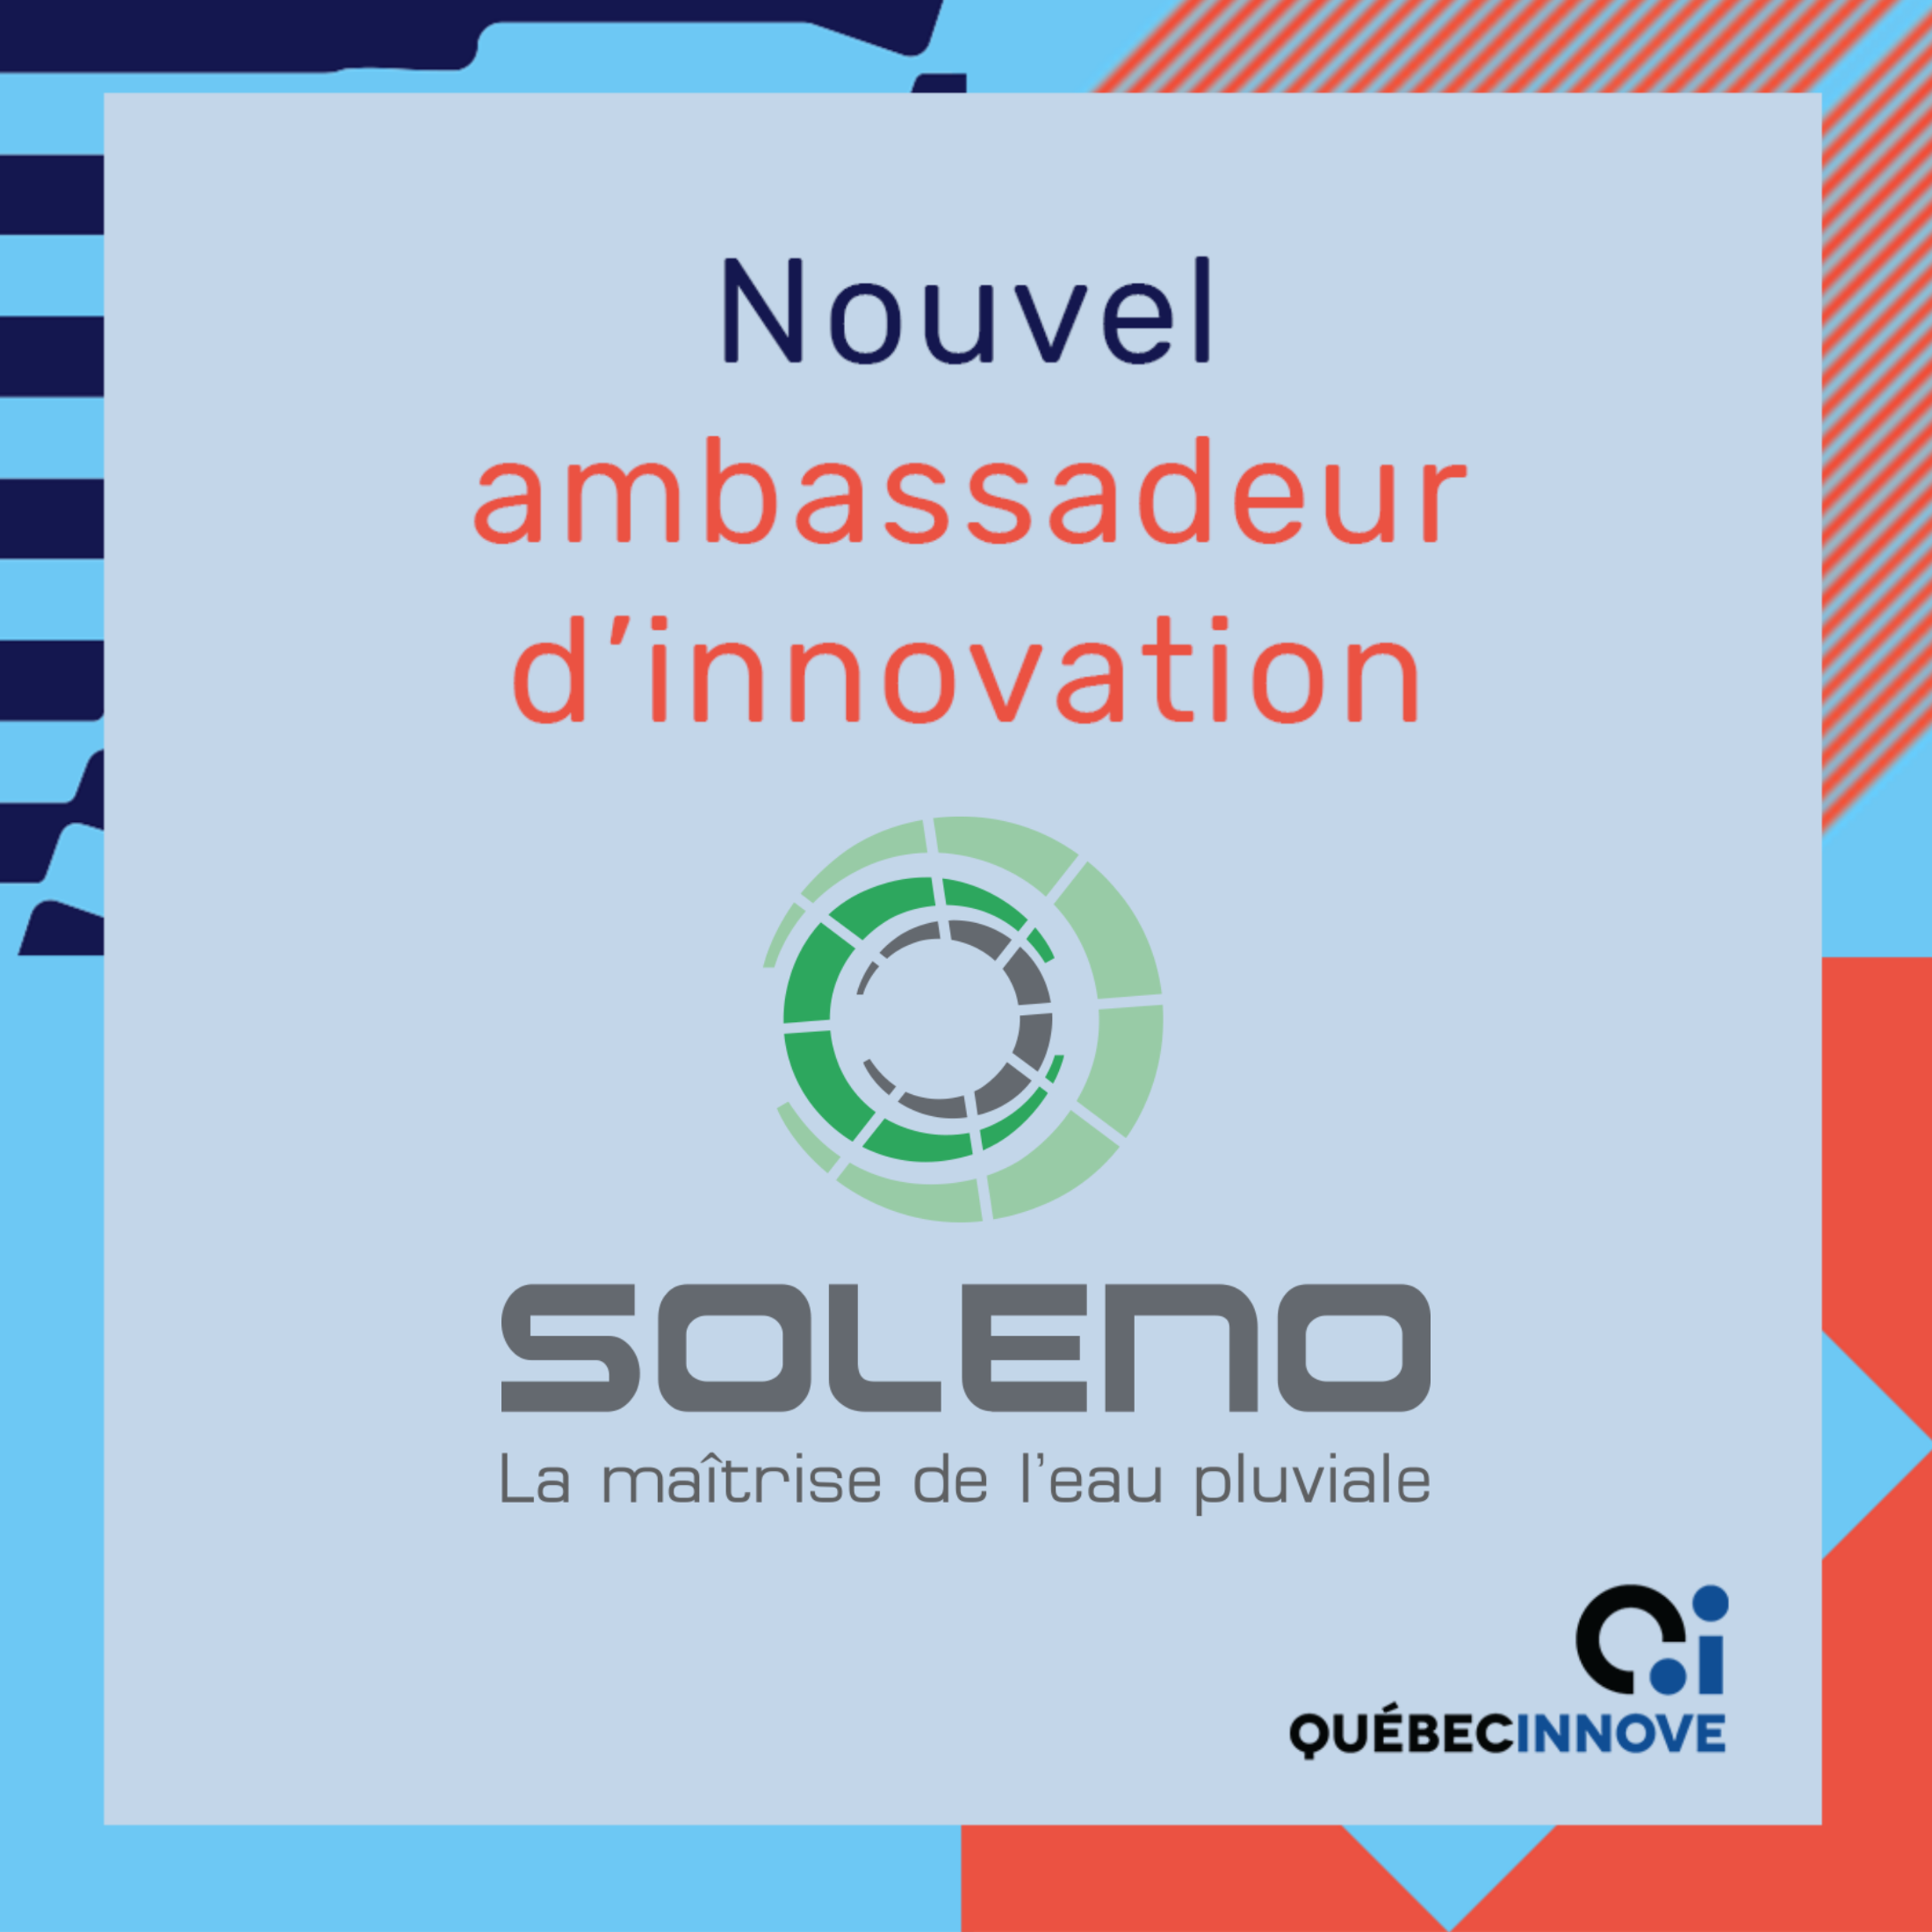 Soleno, new QuébecInnove innovation ambassador!